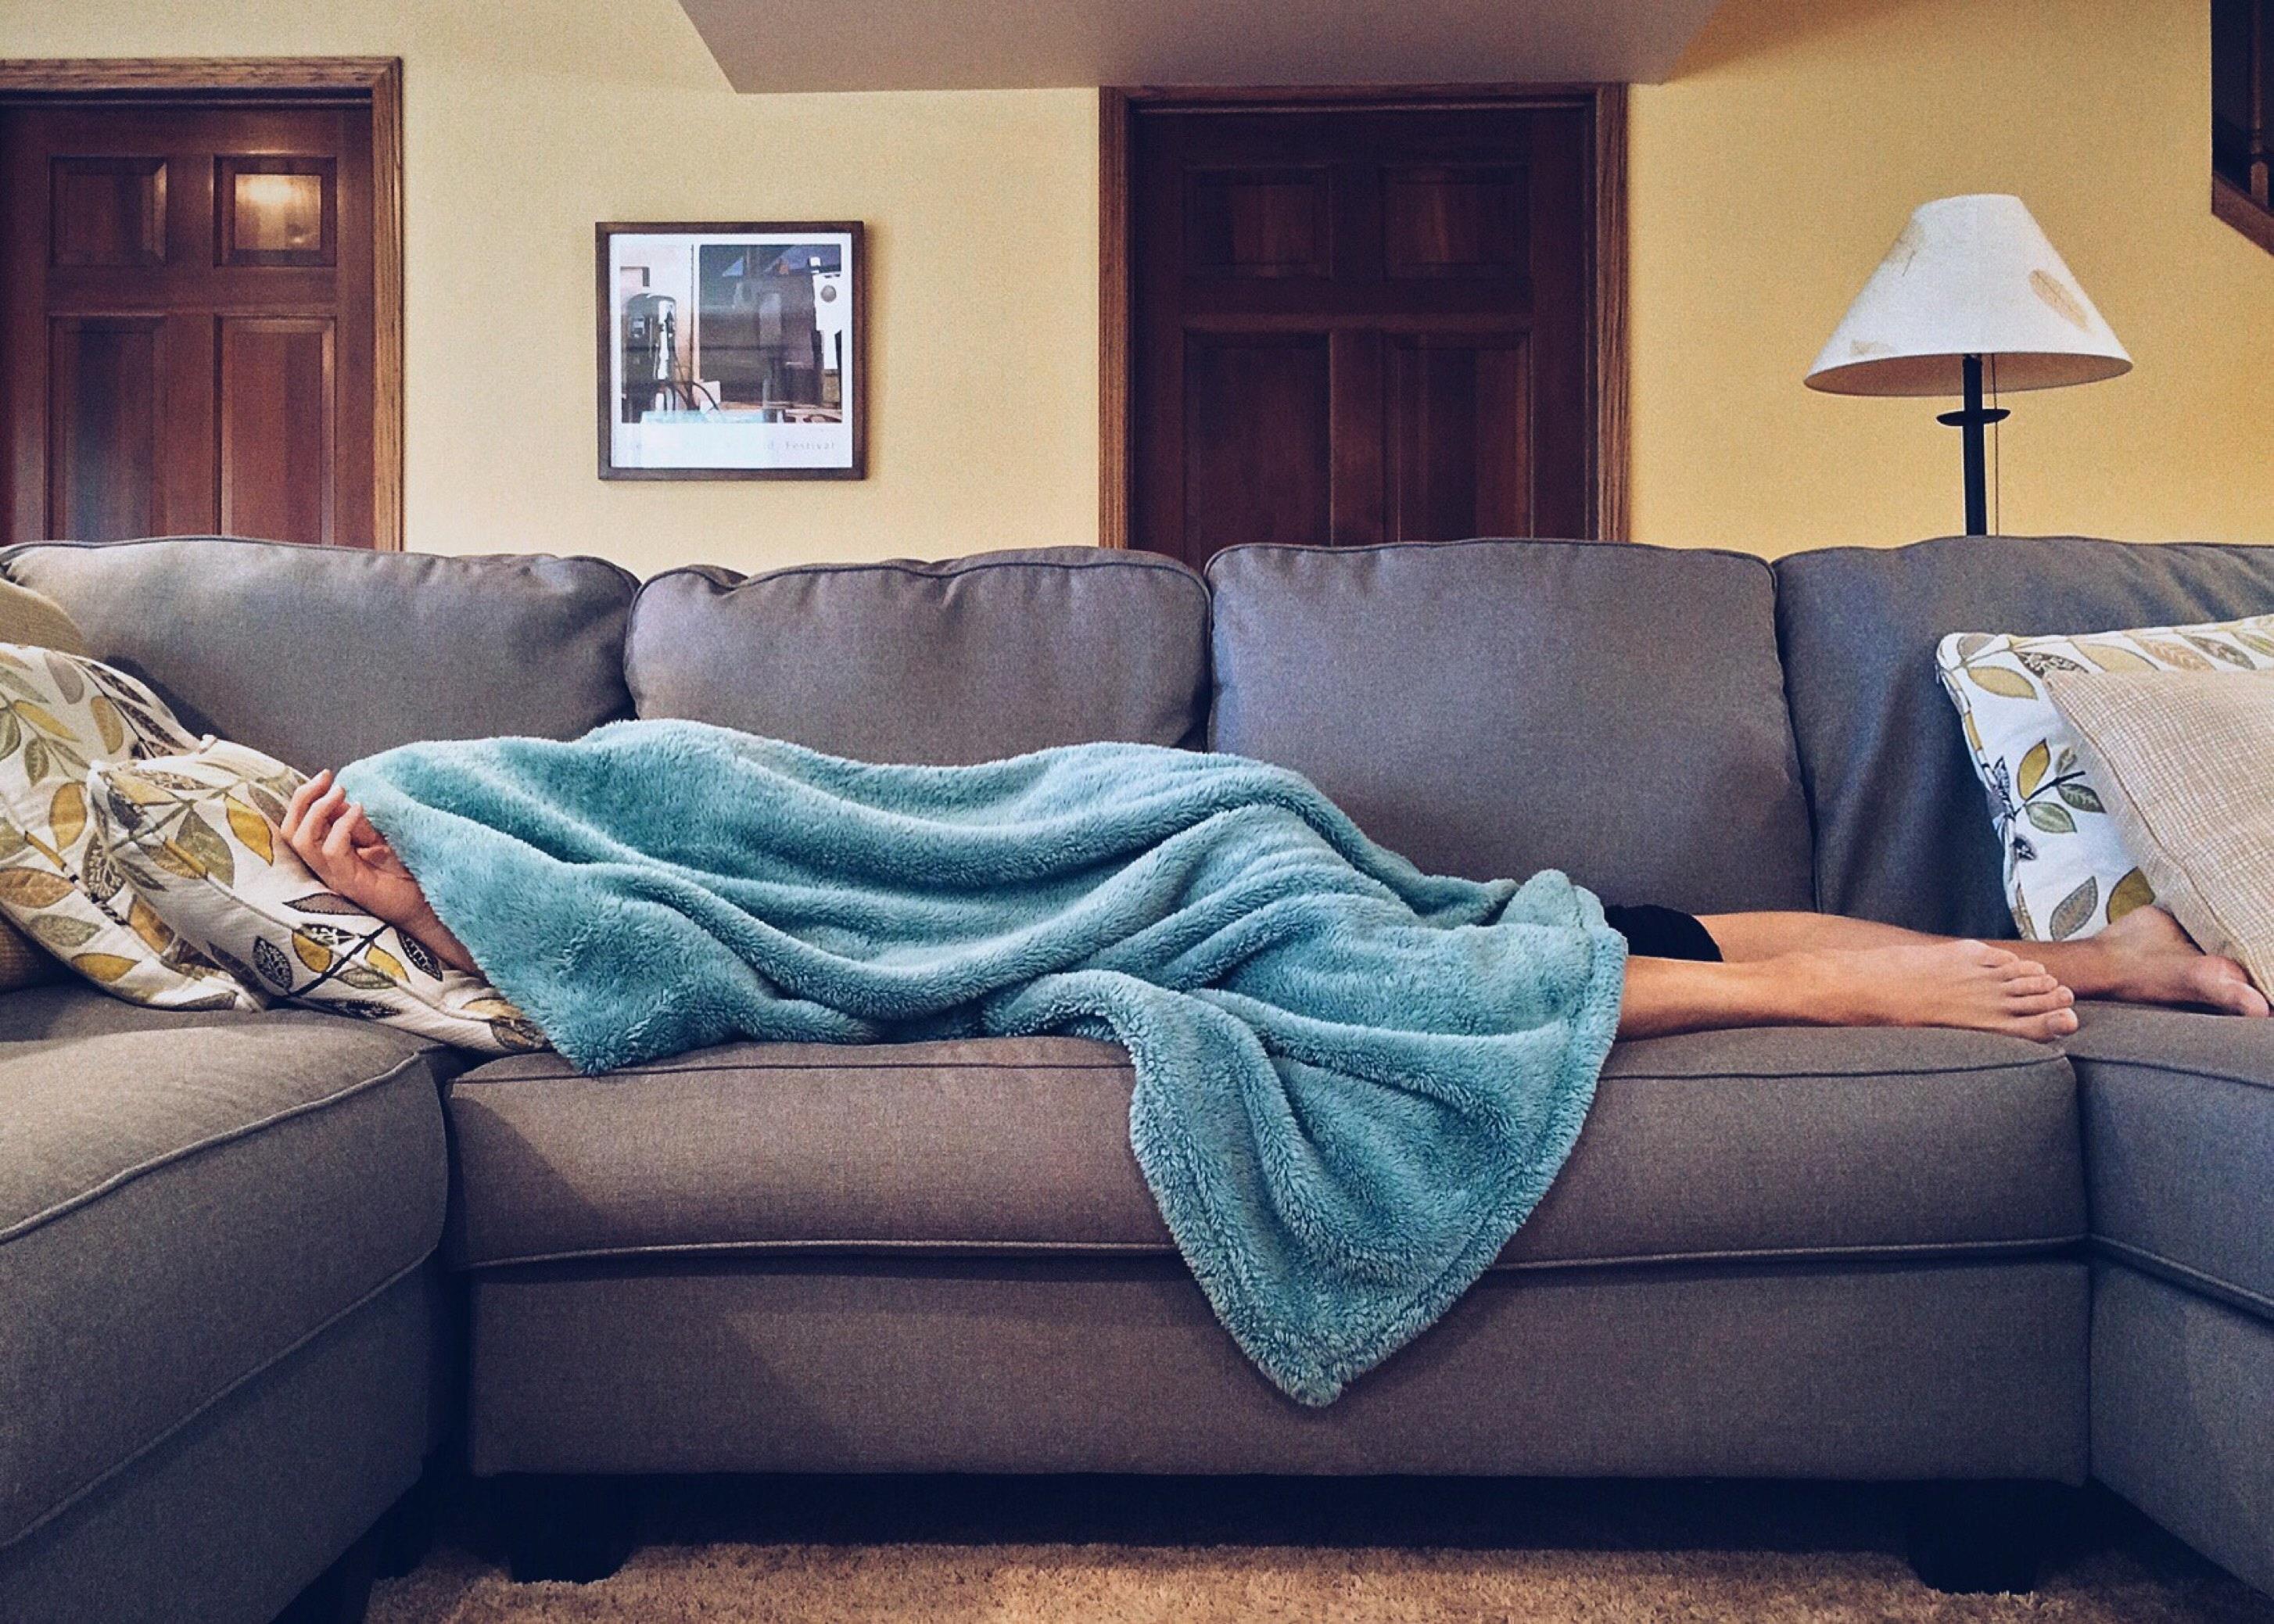 Muž leží nemocný doma na gauči. Je po hlavu přikrytý dekou, není mu dobře.